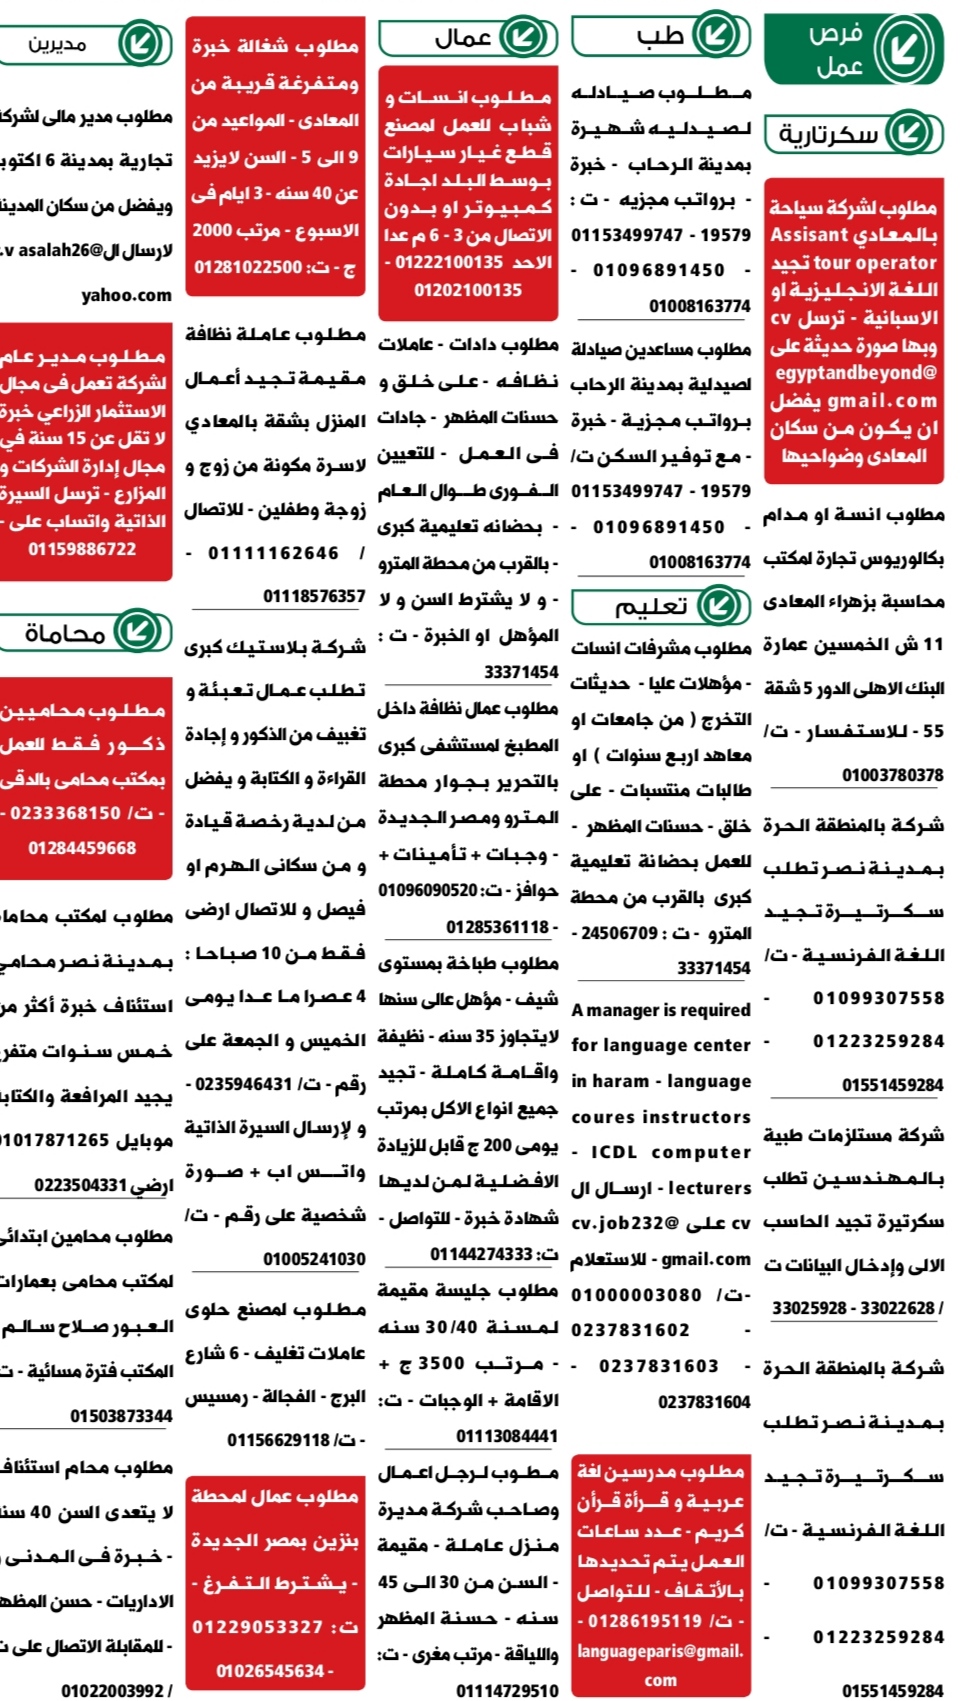 اعلانات وظائف الوسيط pdf الجمعة 24/6/2022 5